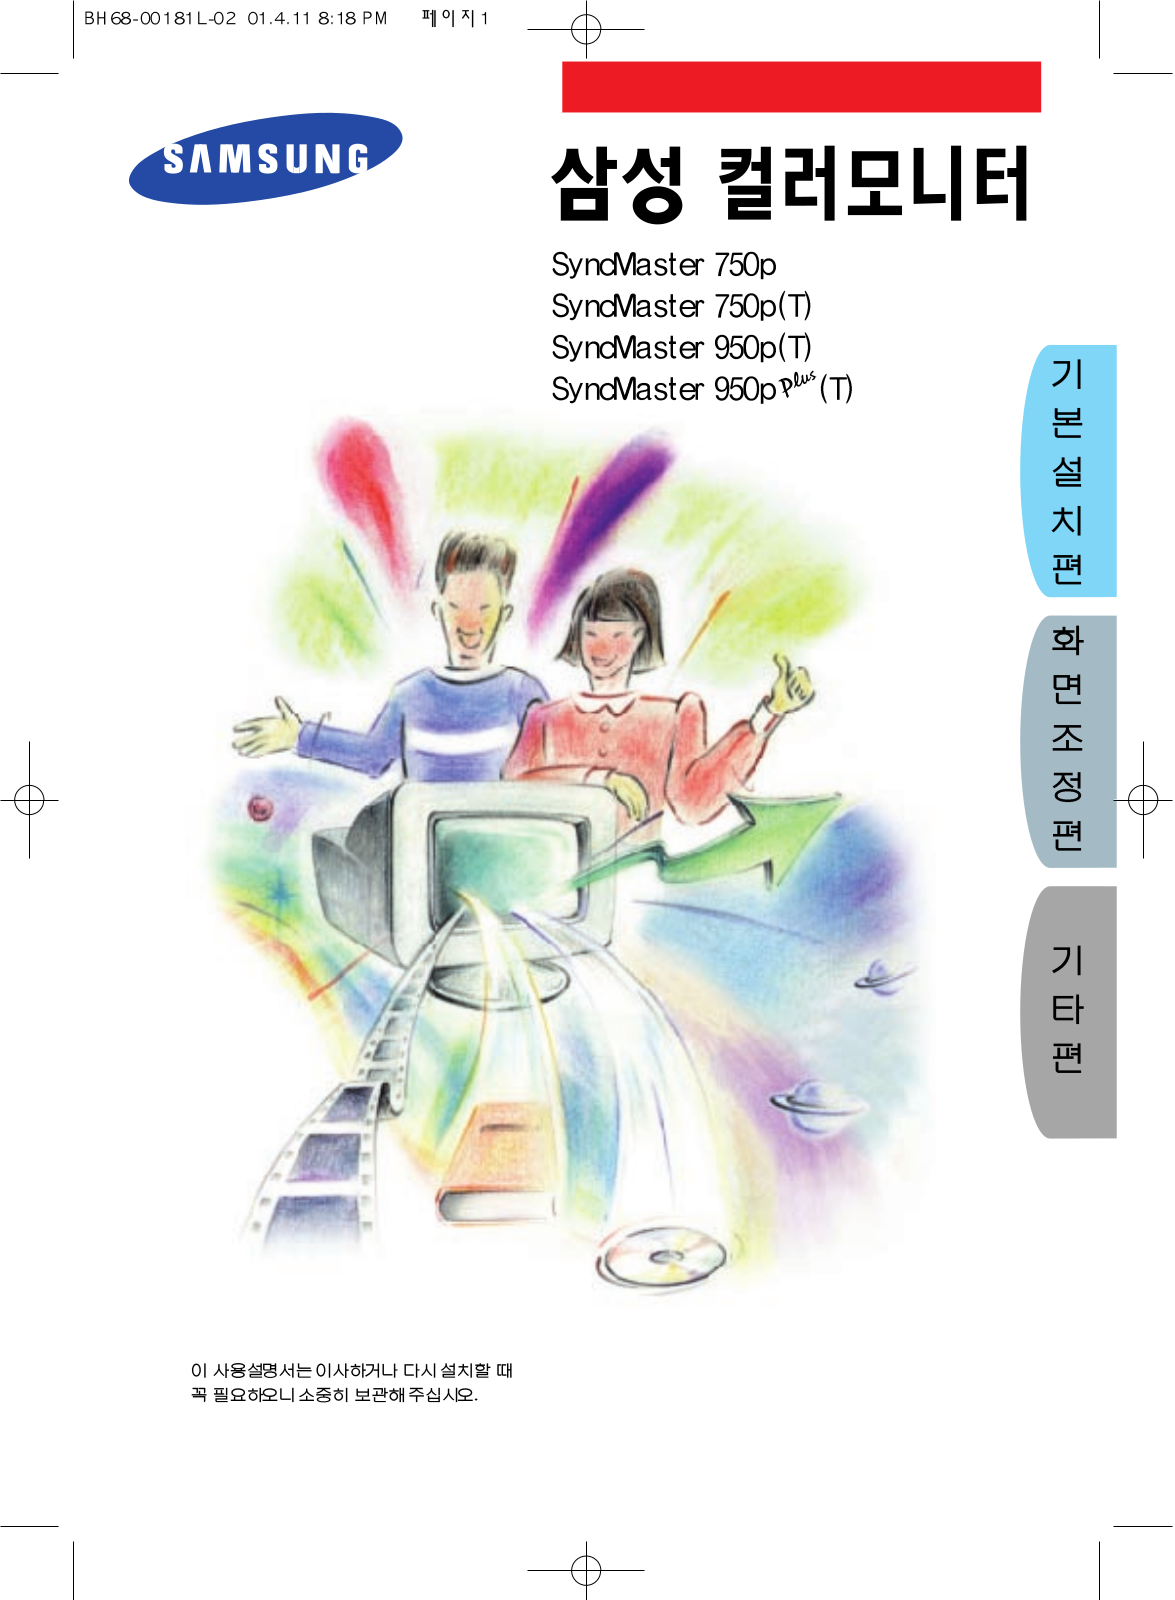 Samsung 950P(T), 950PPLUS(T), 750P(T) User Manual